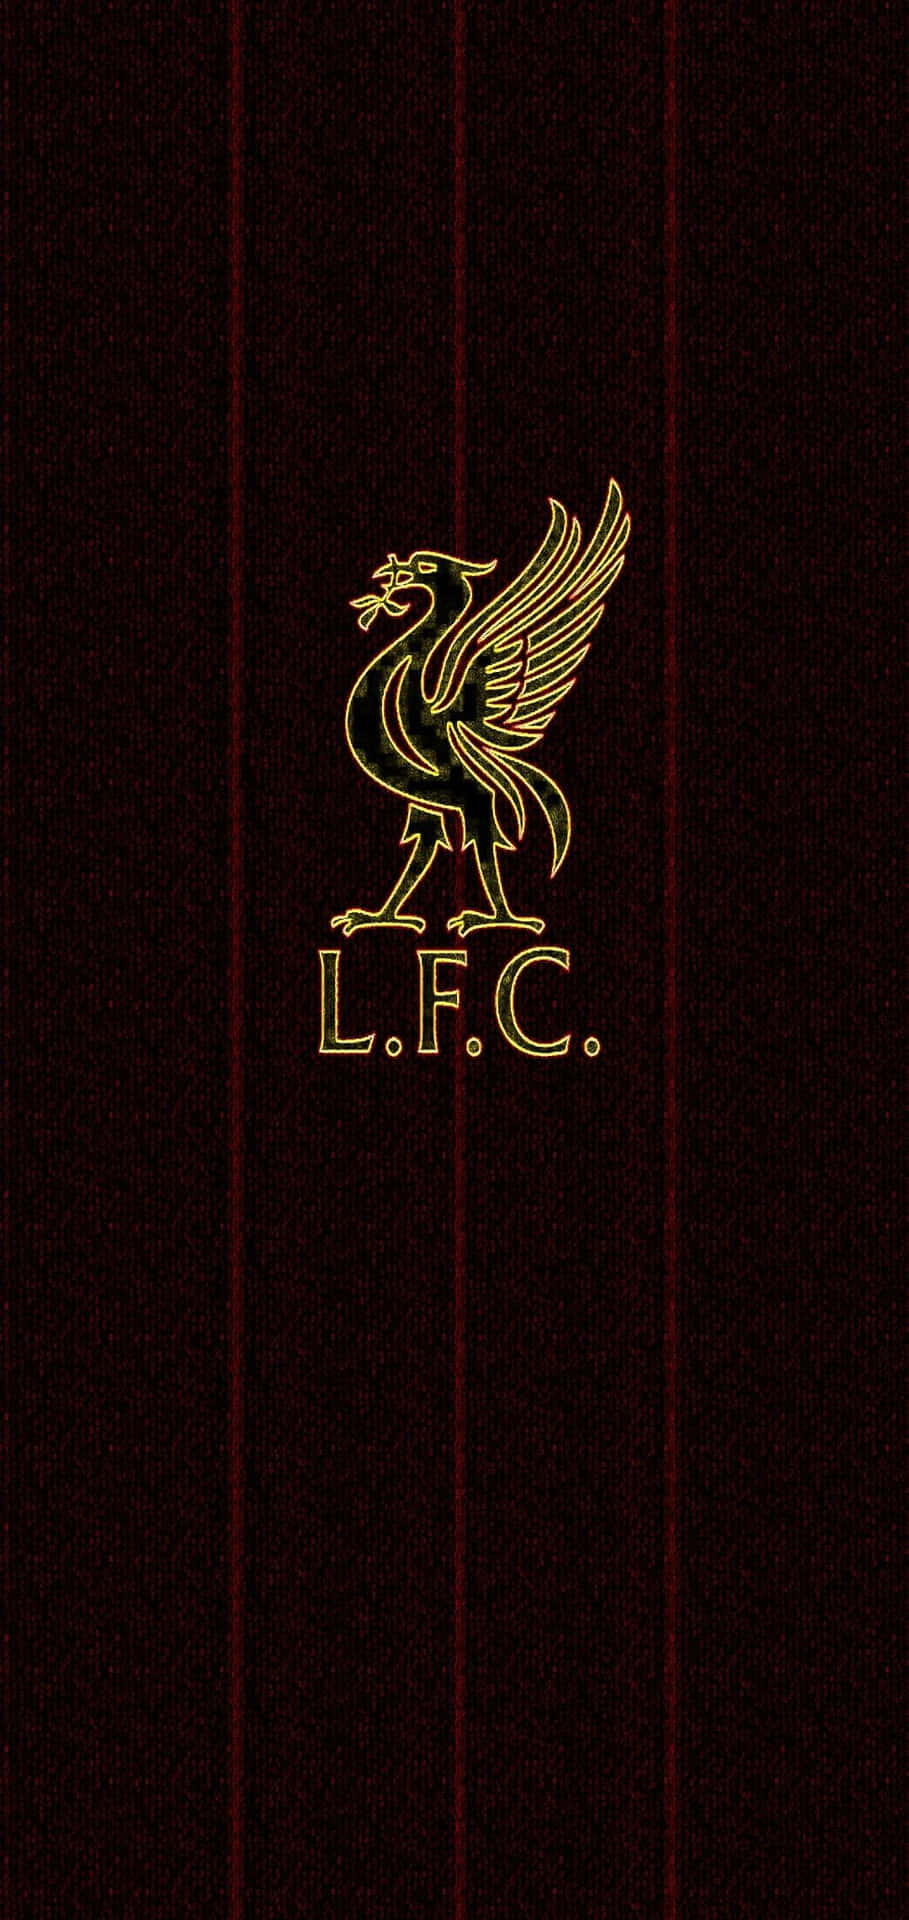 Einebeeindruckende Hintergrundbild Von Liverpool Für Das Iphone. Wallpaper